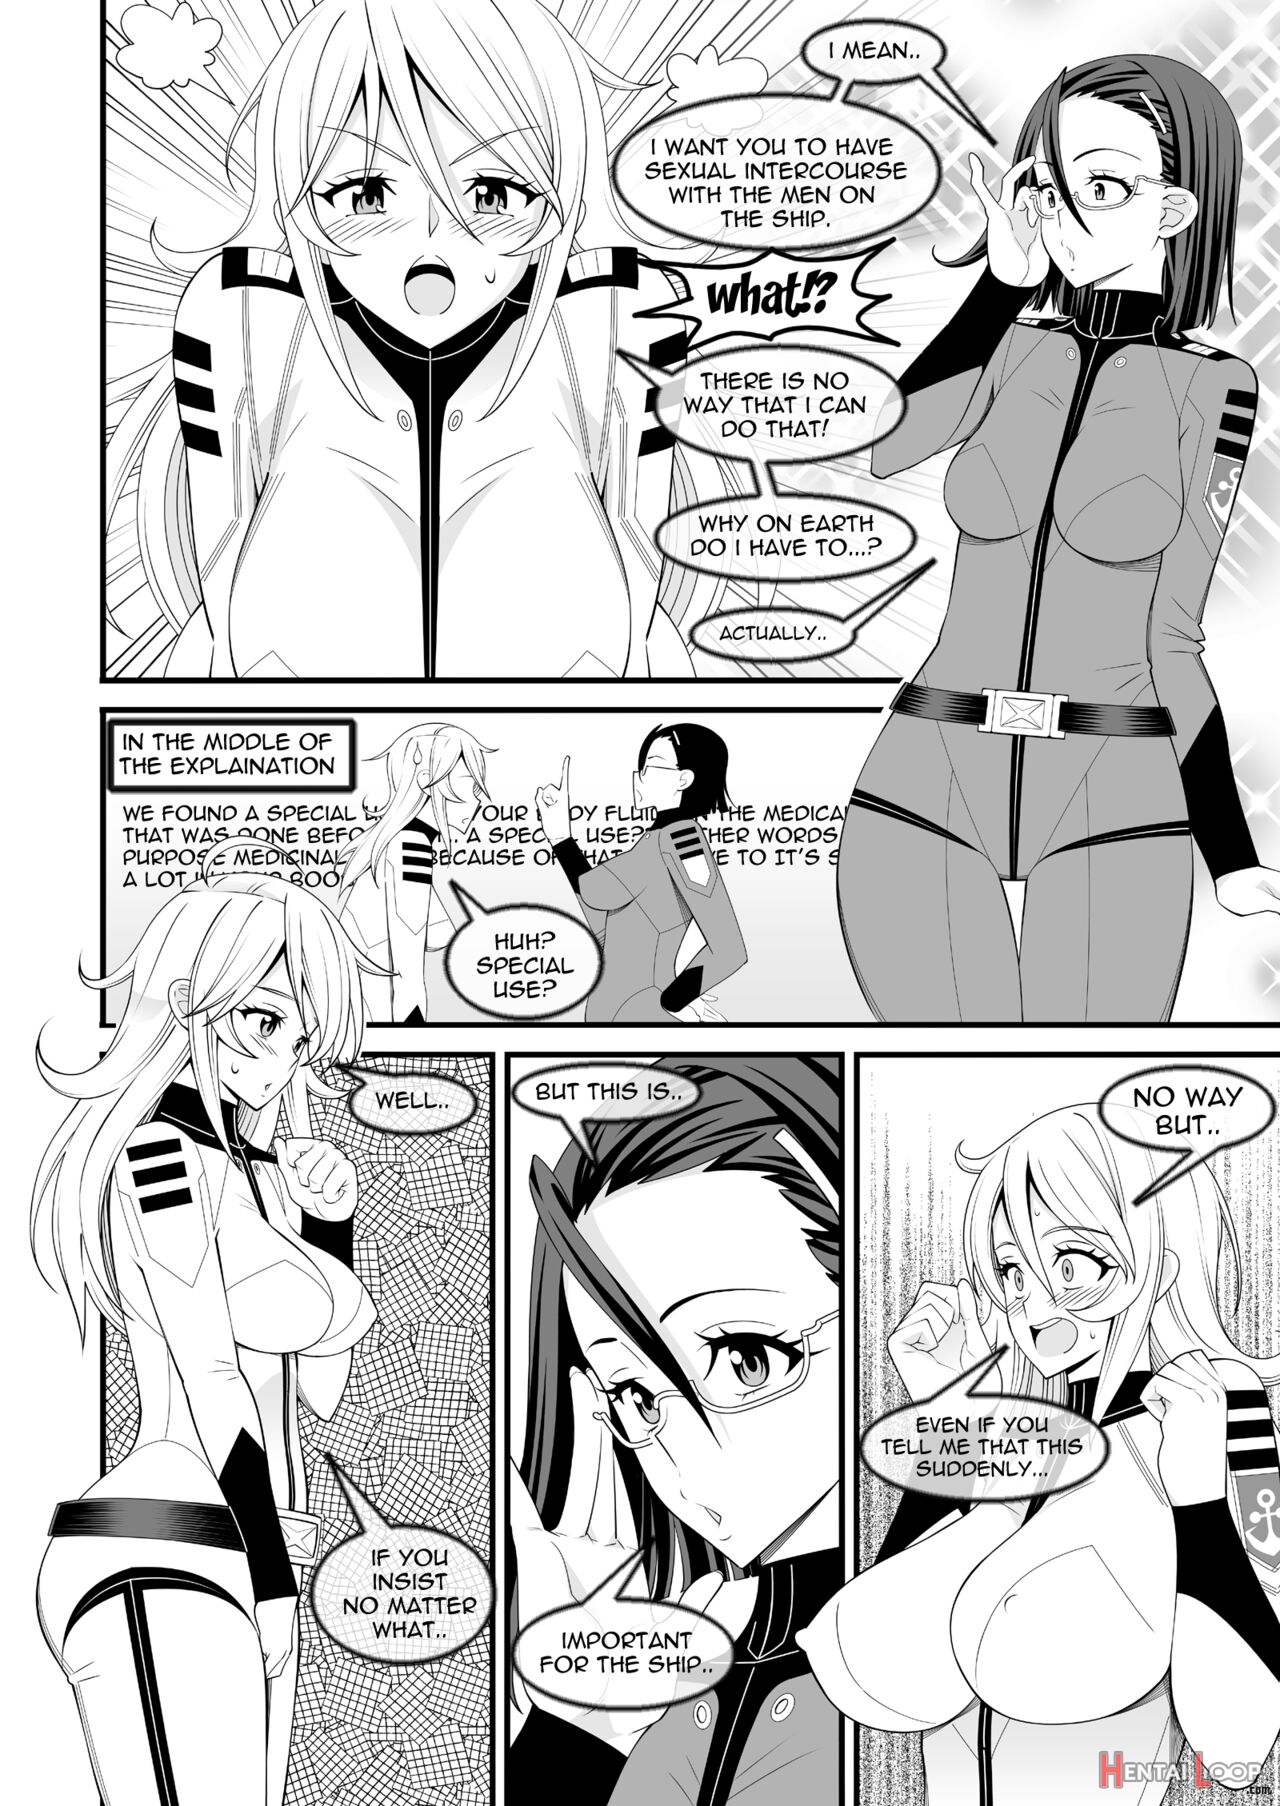 Yamato's Beauty page 3